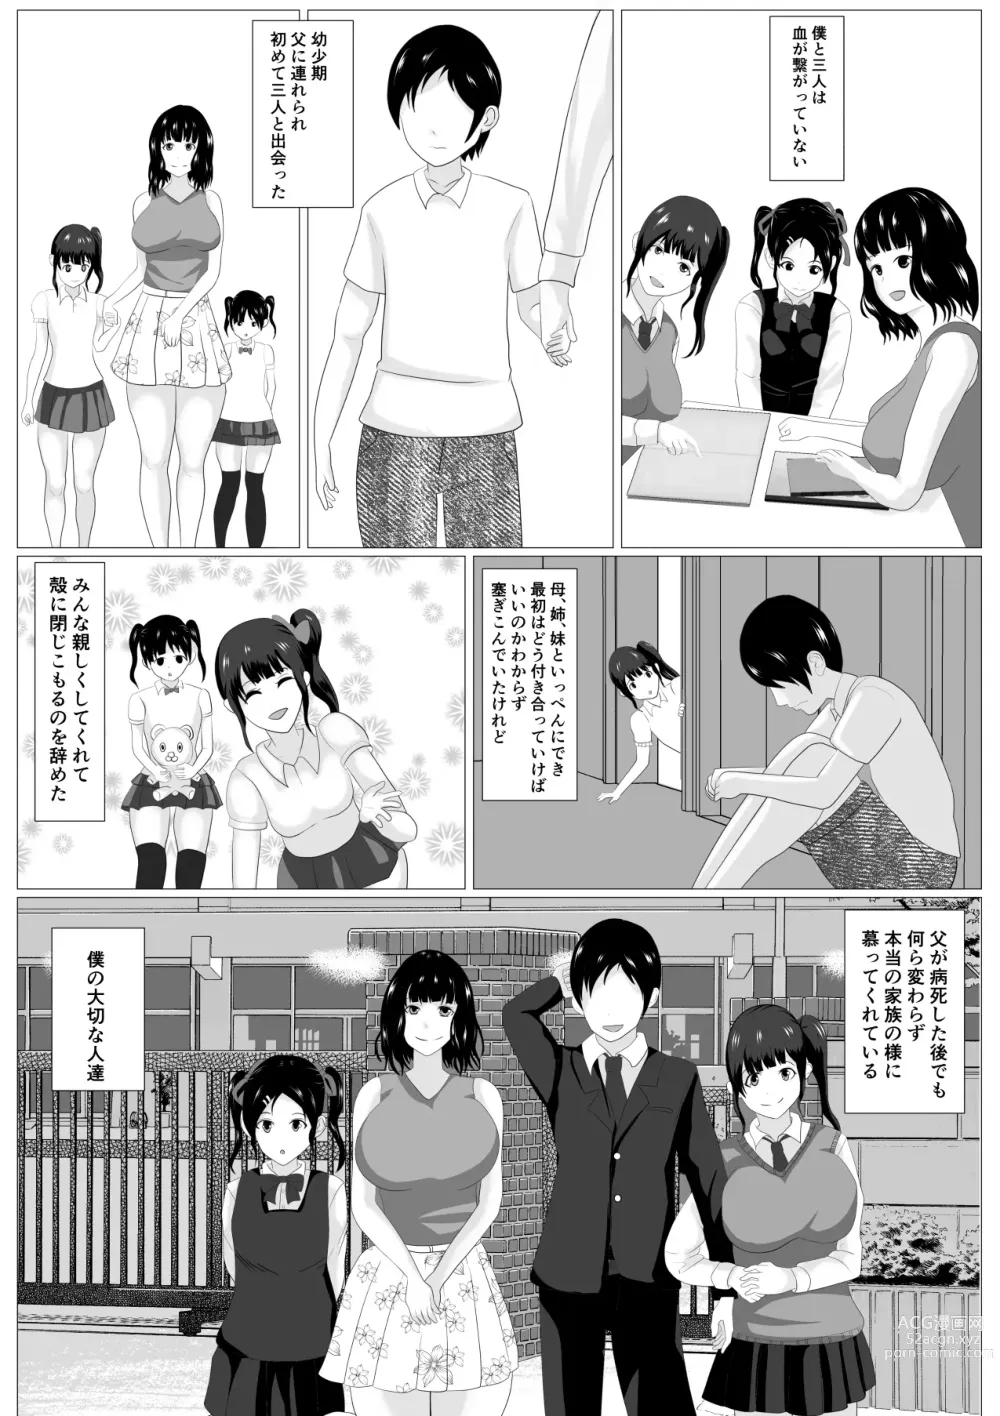 Page 6 of doujinshi Kazoku Torare